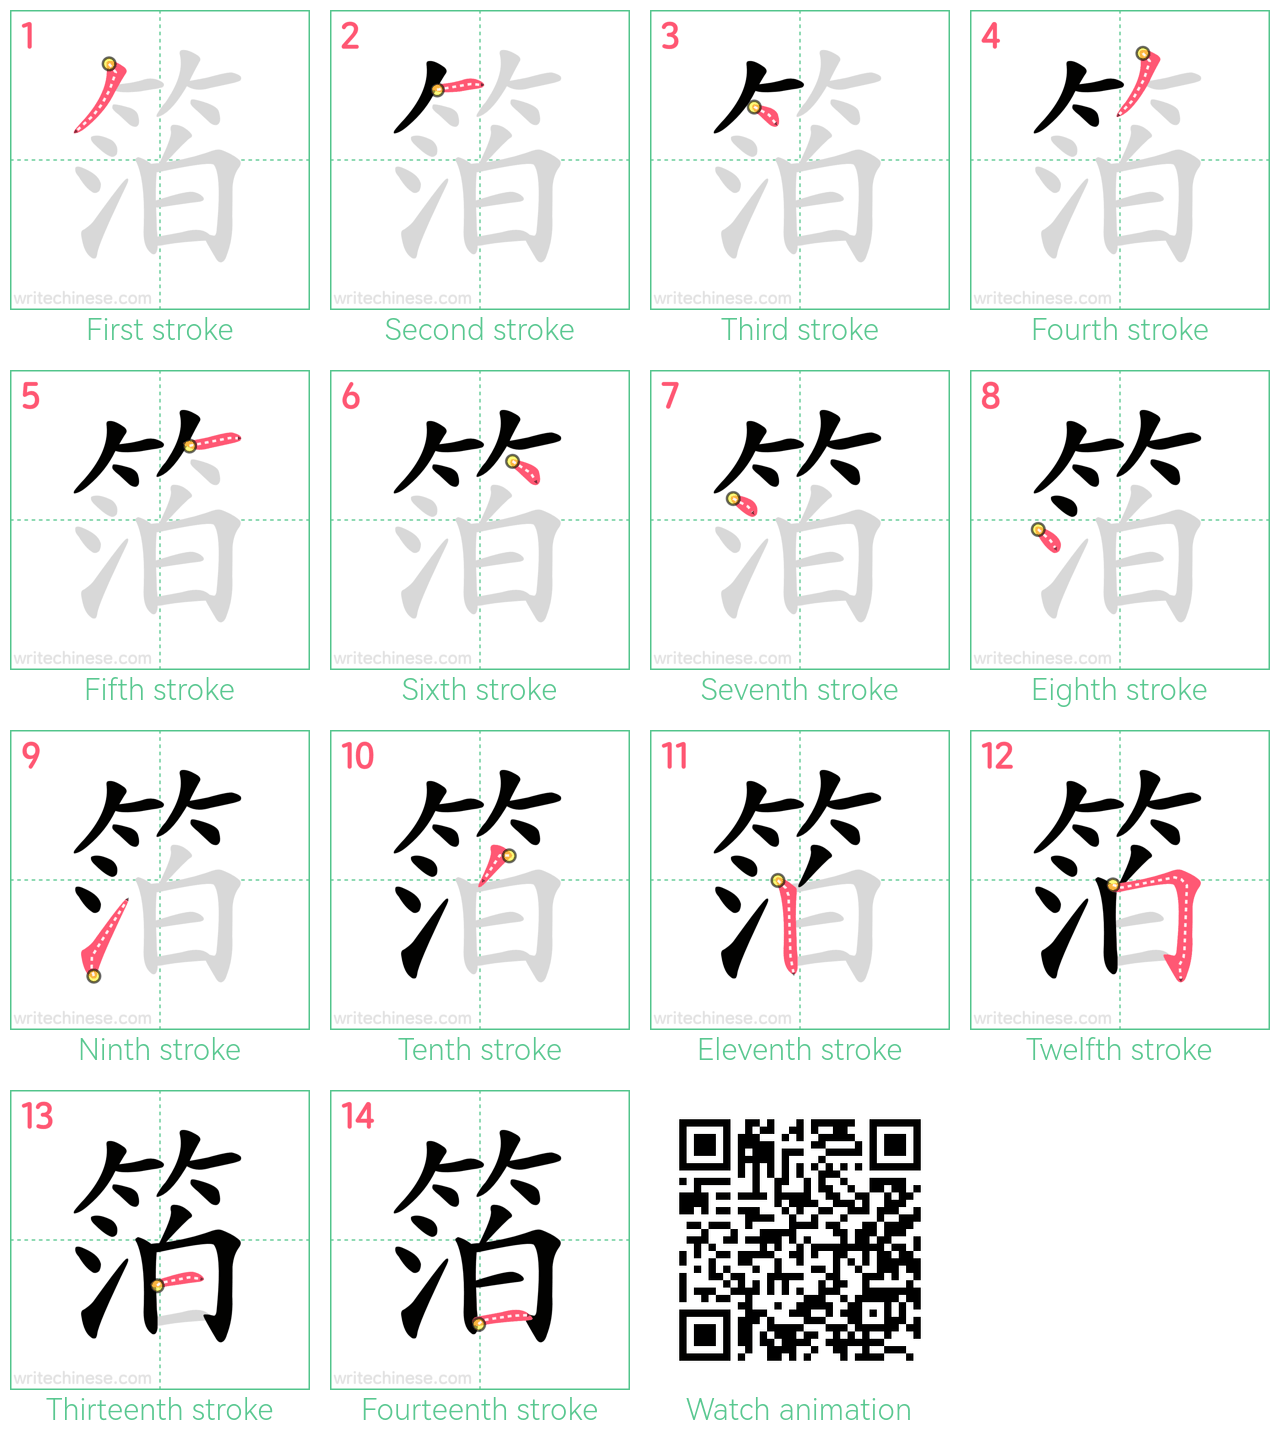 箔 step-by-step stroke order diagrams